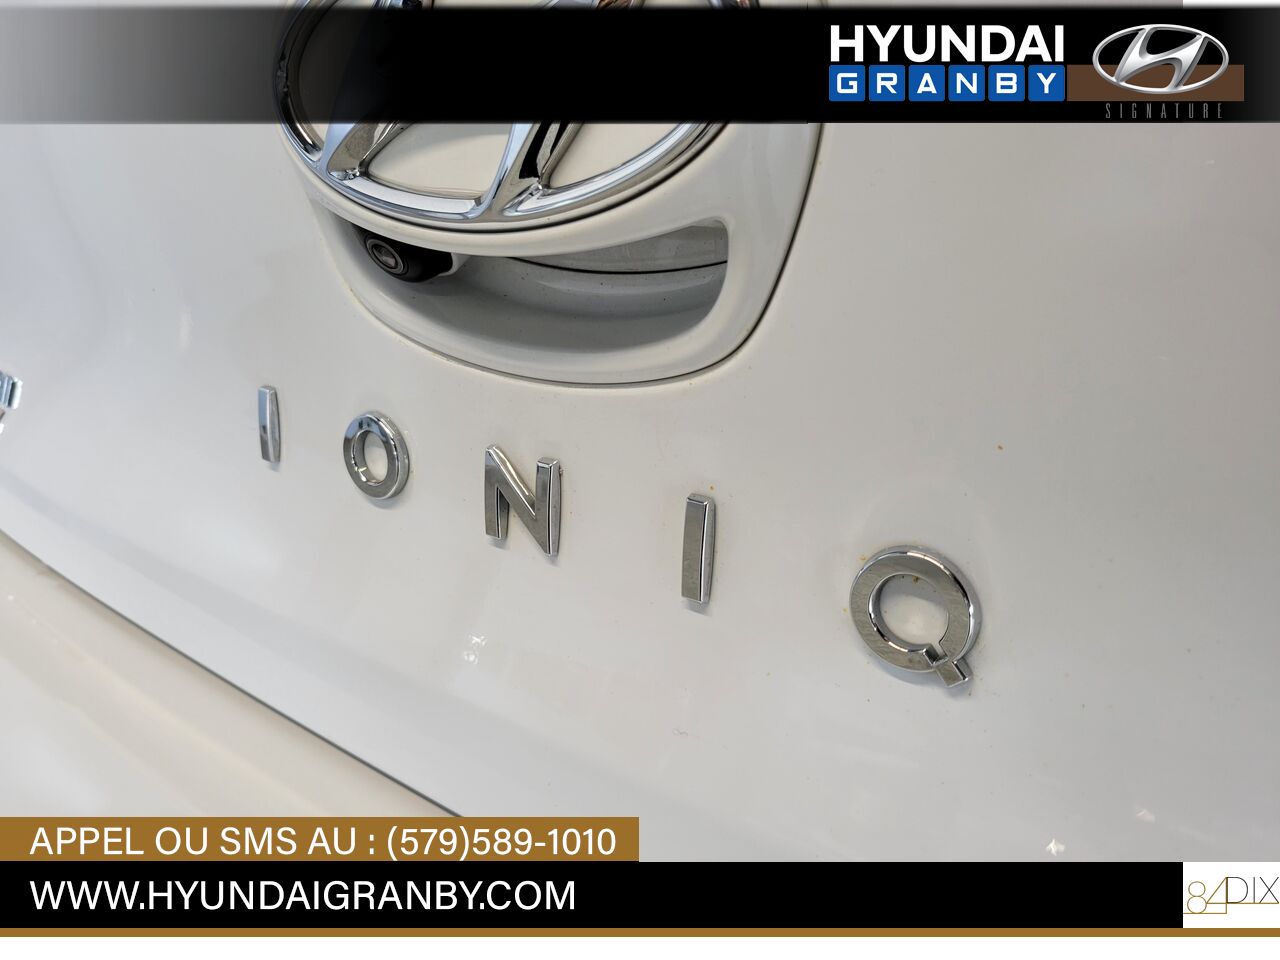 2019 Hyundai Ioniq électrique plus Granby - photo #7